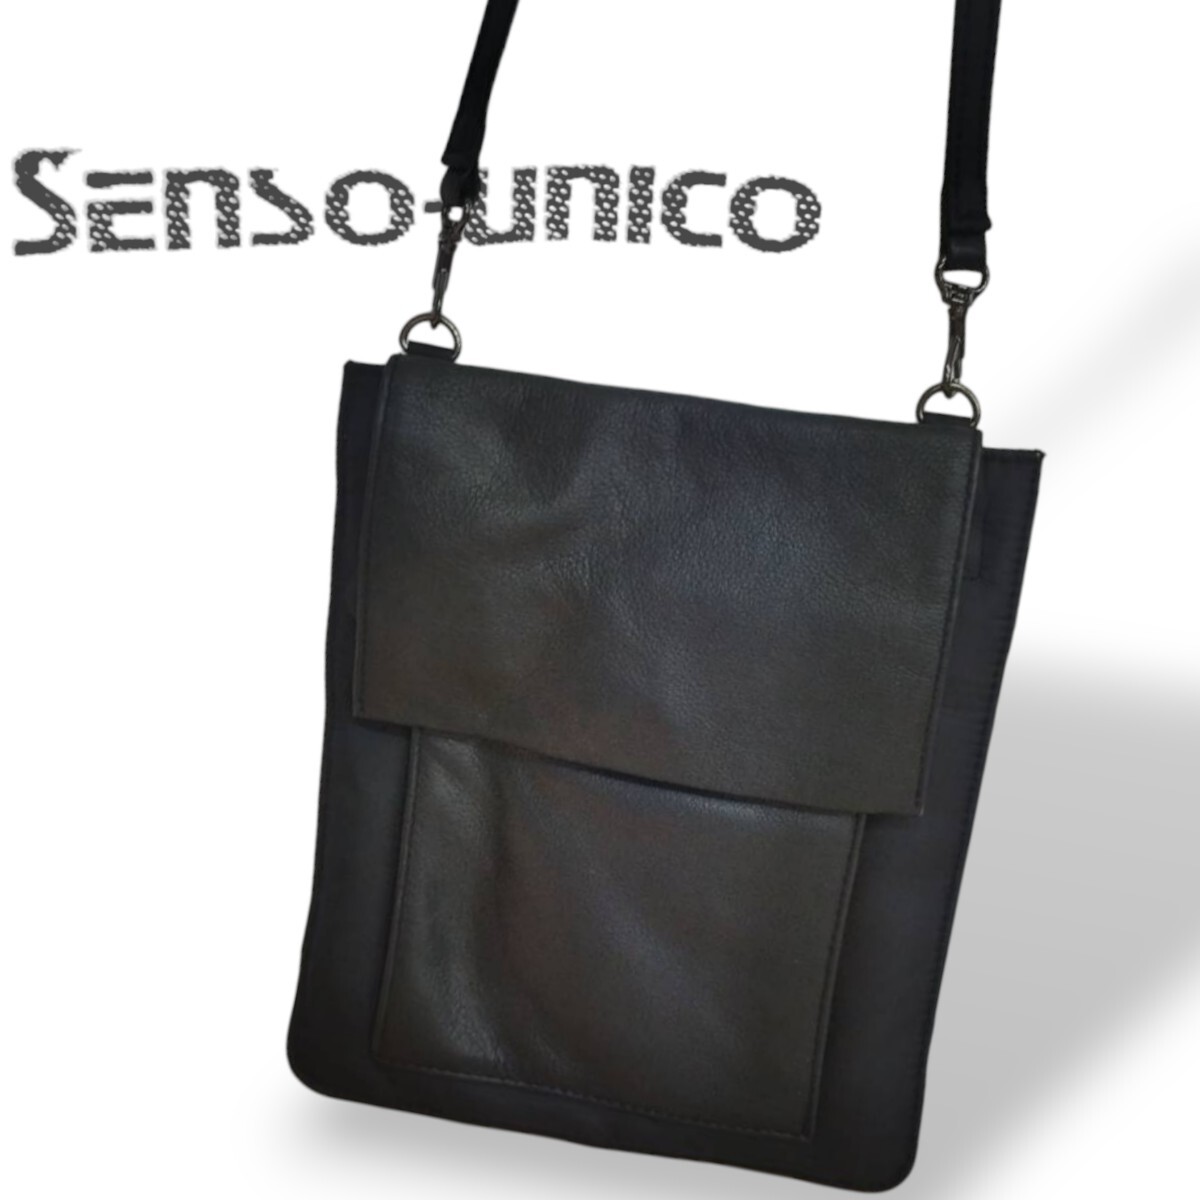 センソユニコ レザー ナイロン ショルダーバッグ ブラック SENSO-Unico SENSO Unico カバン 鞄 AK18_画像1